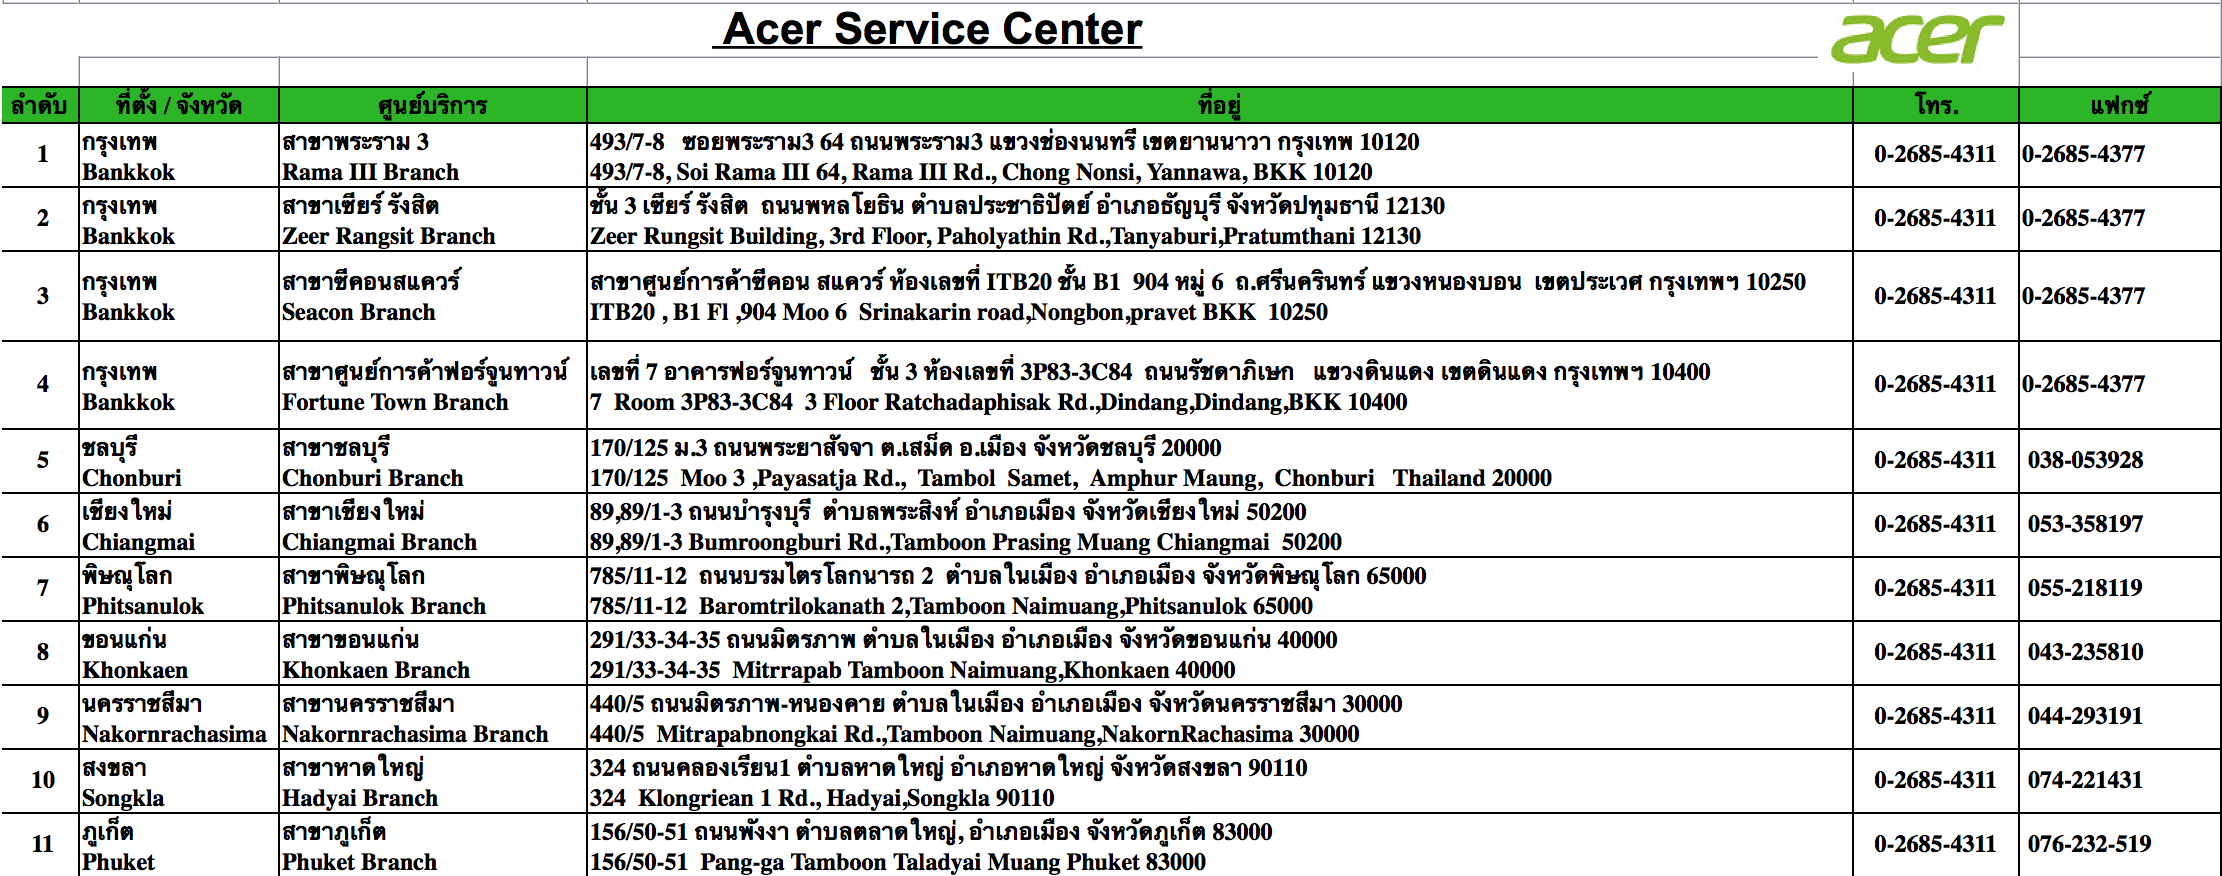 รวมที่ตั้งศูนย์บริการ Acer สำหรับเคลมมือถือ แท็บเล็ต Acer ในประเทศไทย [อัพเดต 2015]